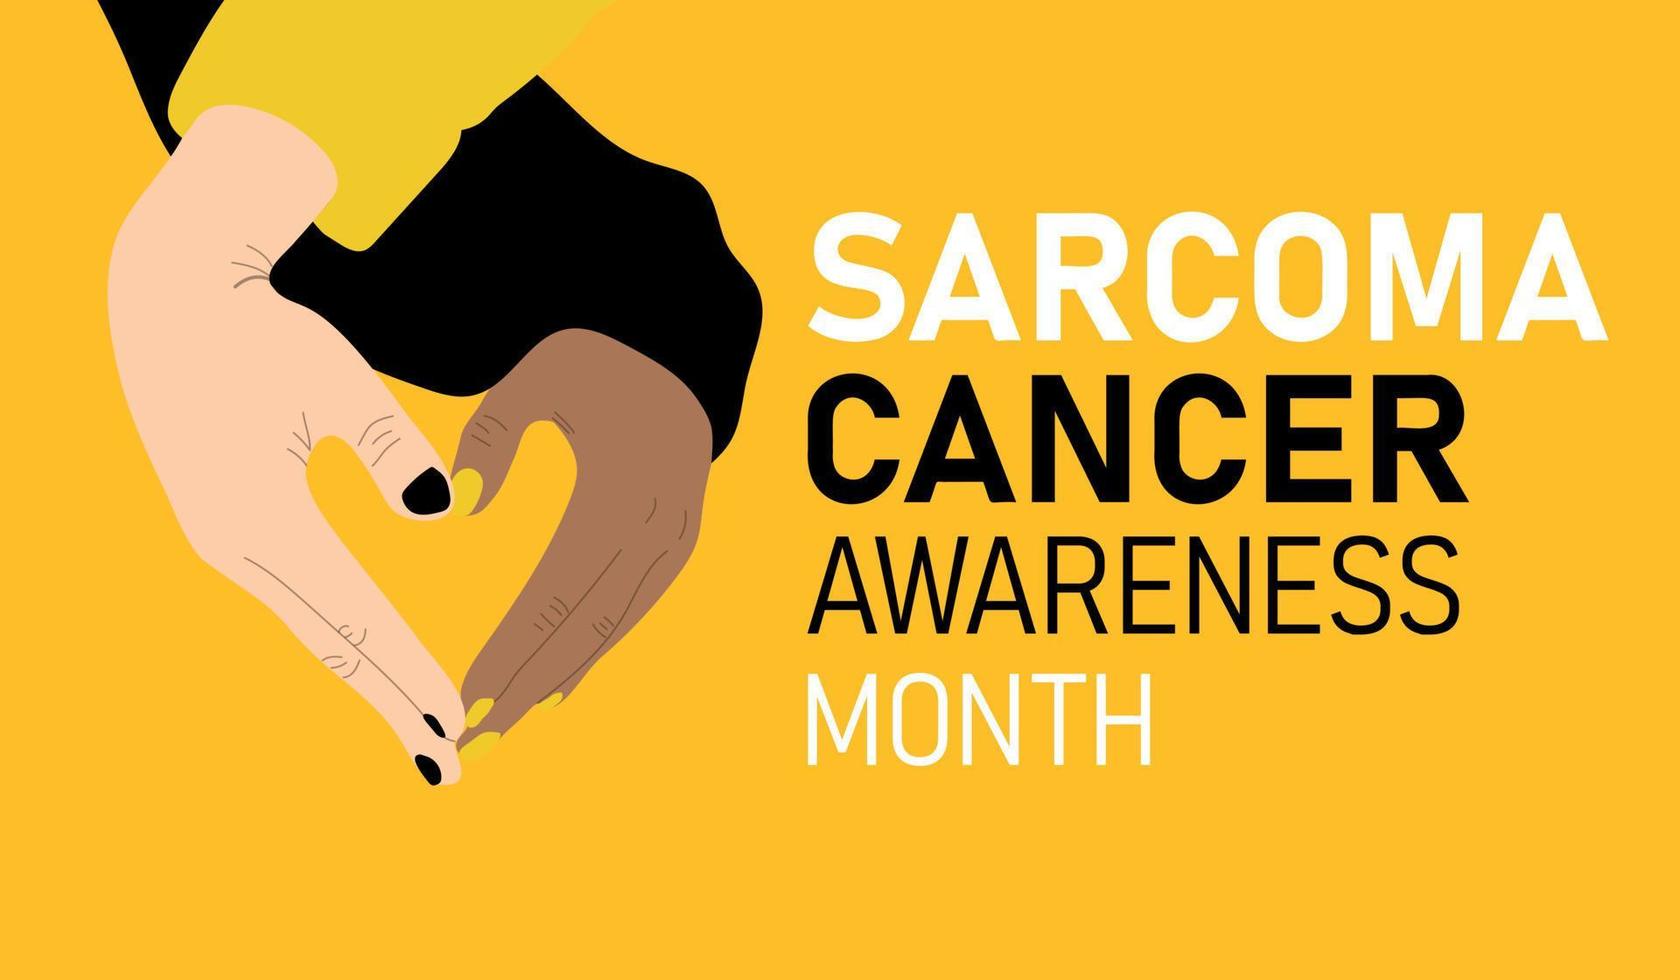 sarcoom kanker bewustzijn maand vector